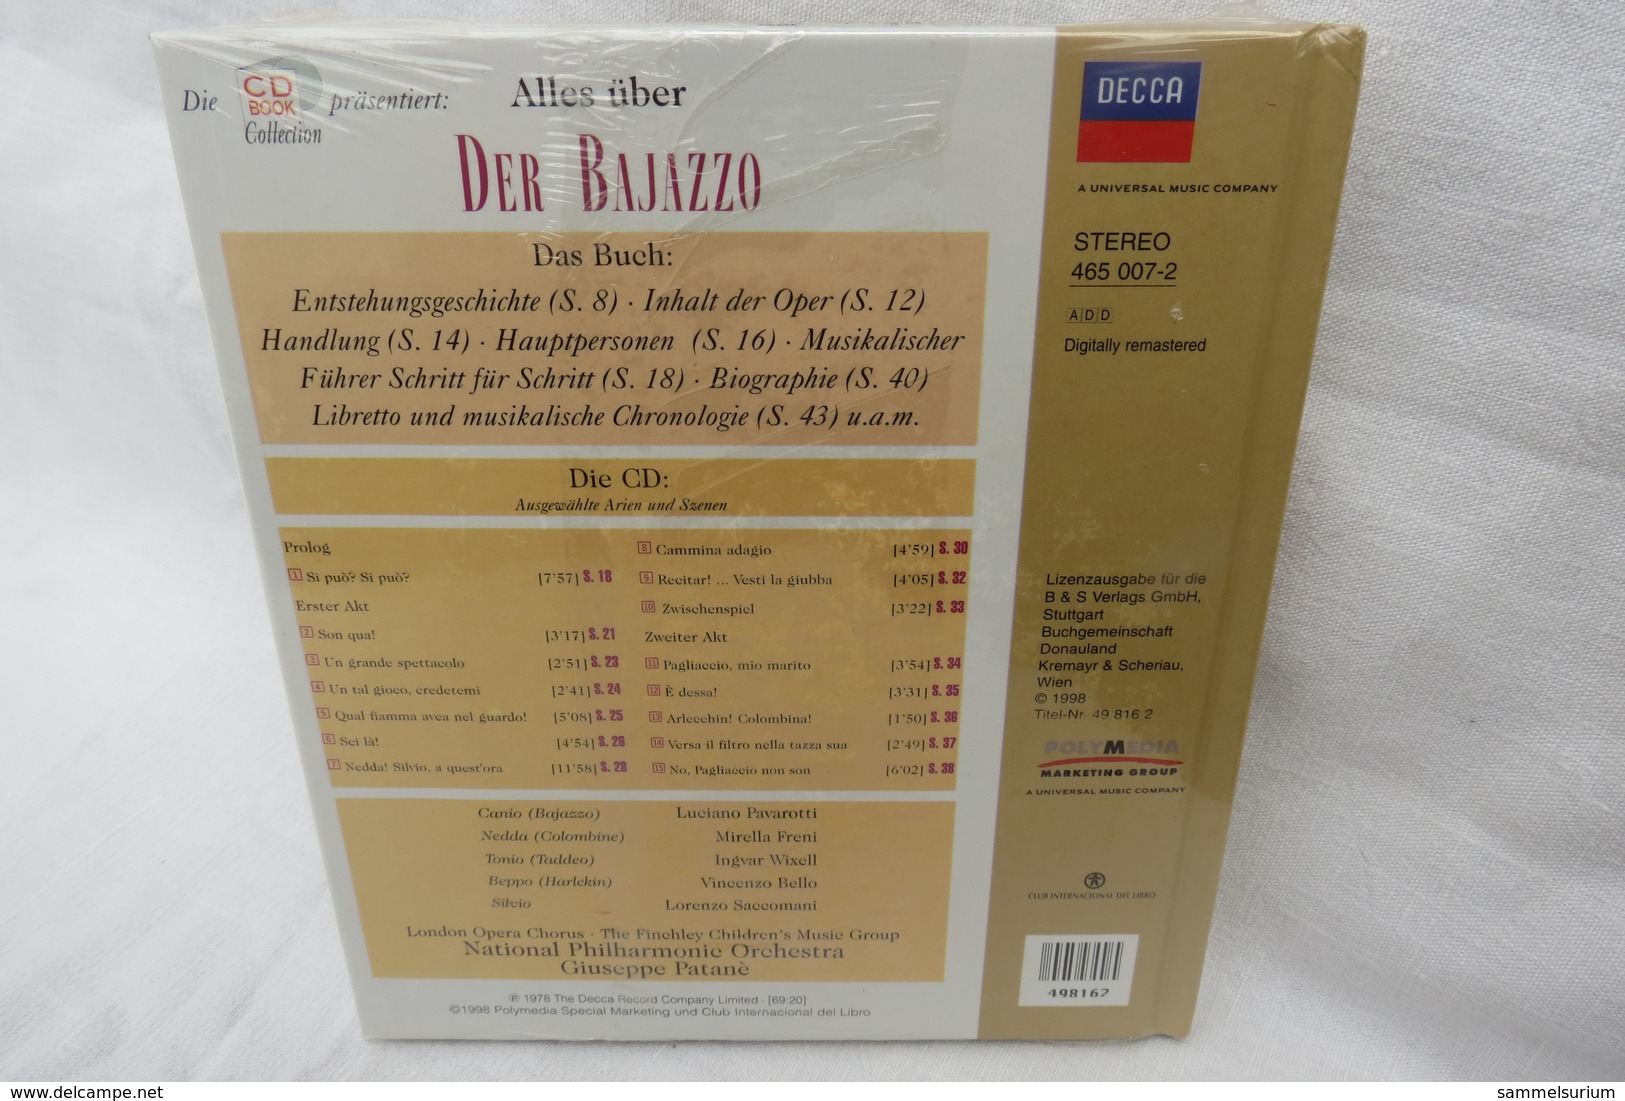 CD "Der Bajazzo / Ruggero Leoncavallo" Mit Buch Aus Der CD Book Collection (ungeöffnet, Original Eingeschweißt) - Opéra & Opérette